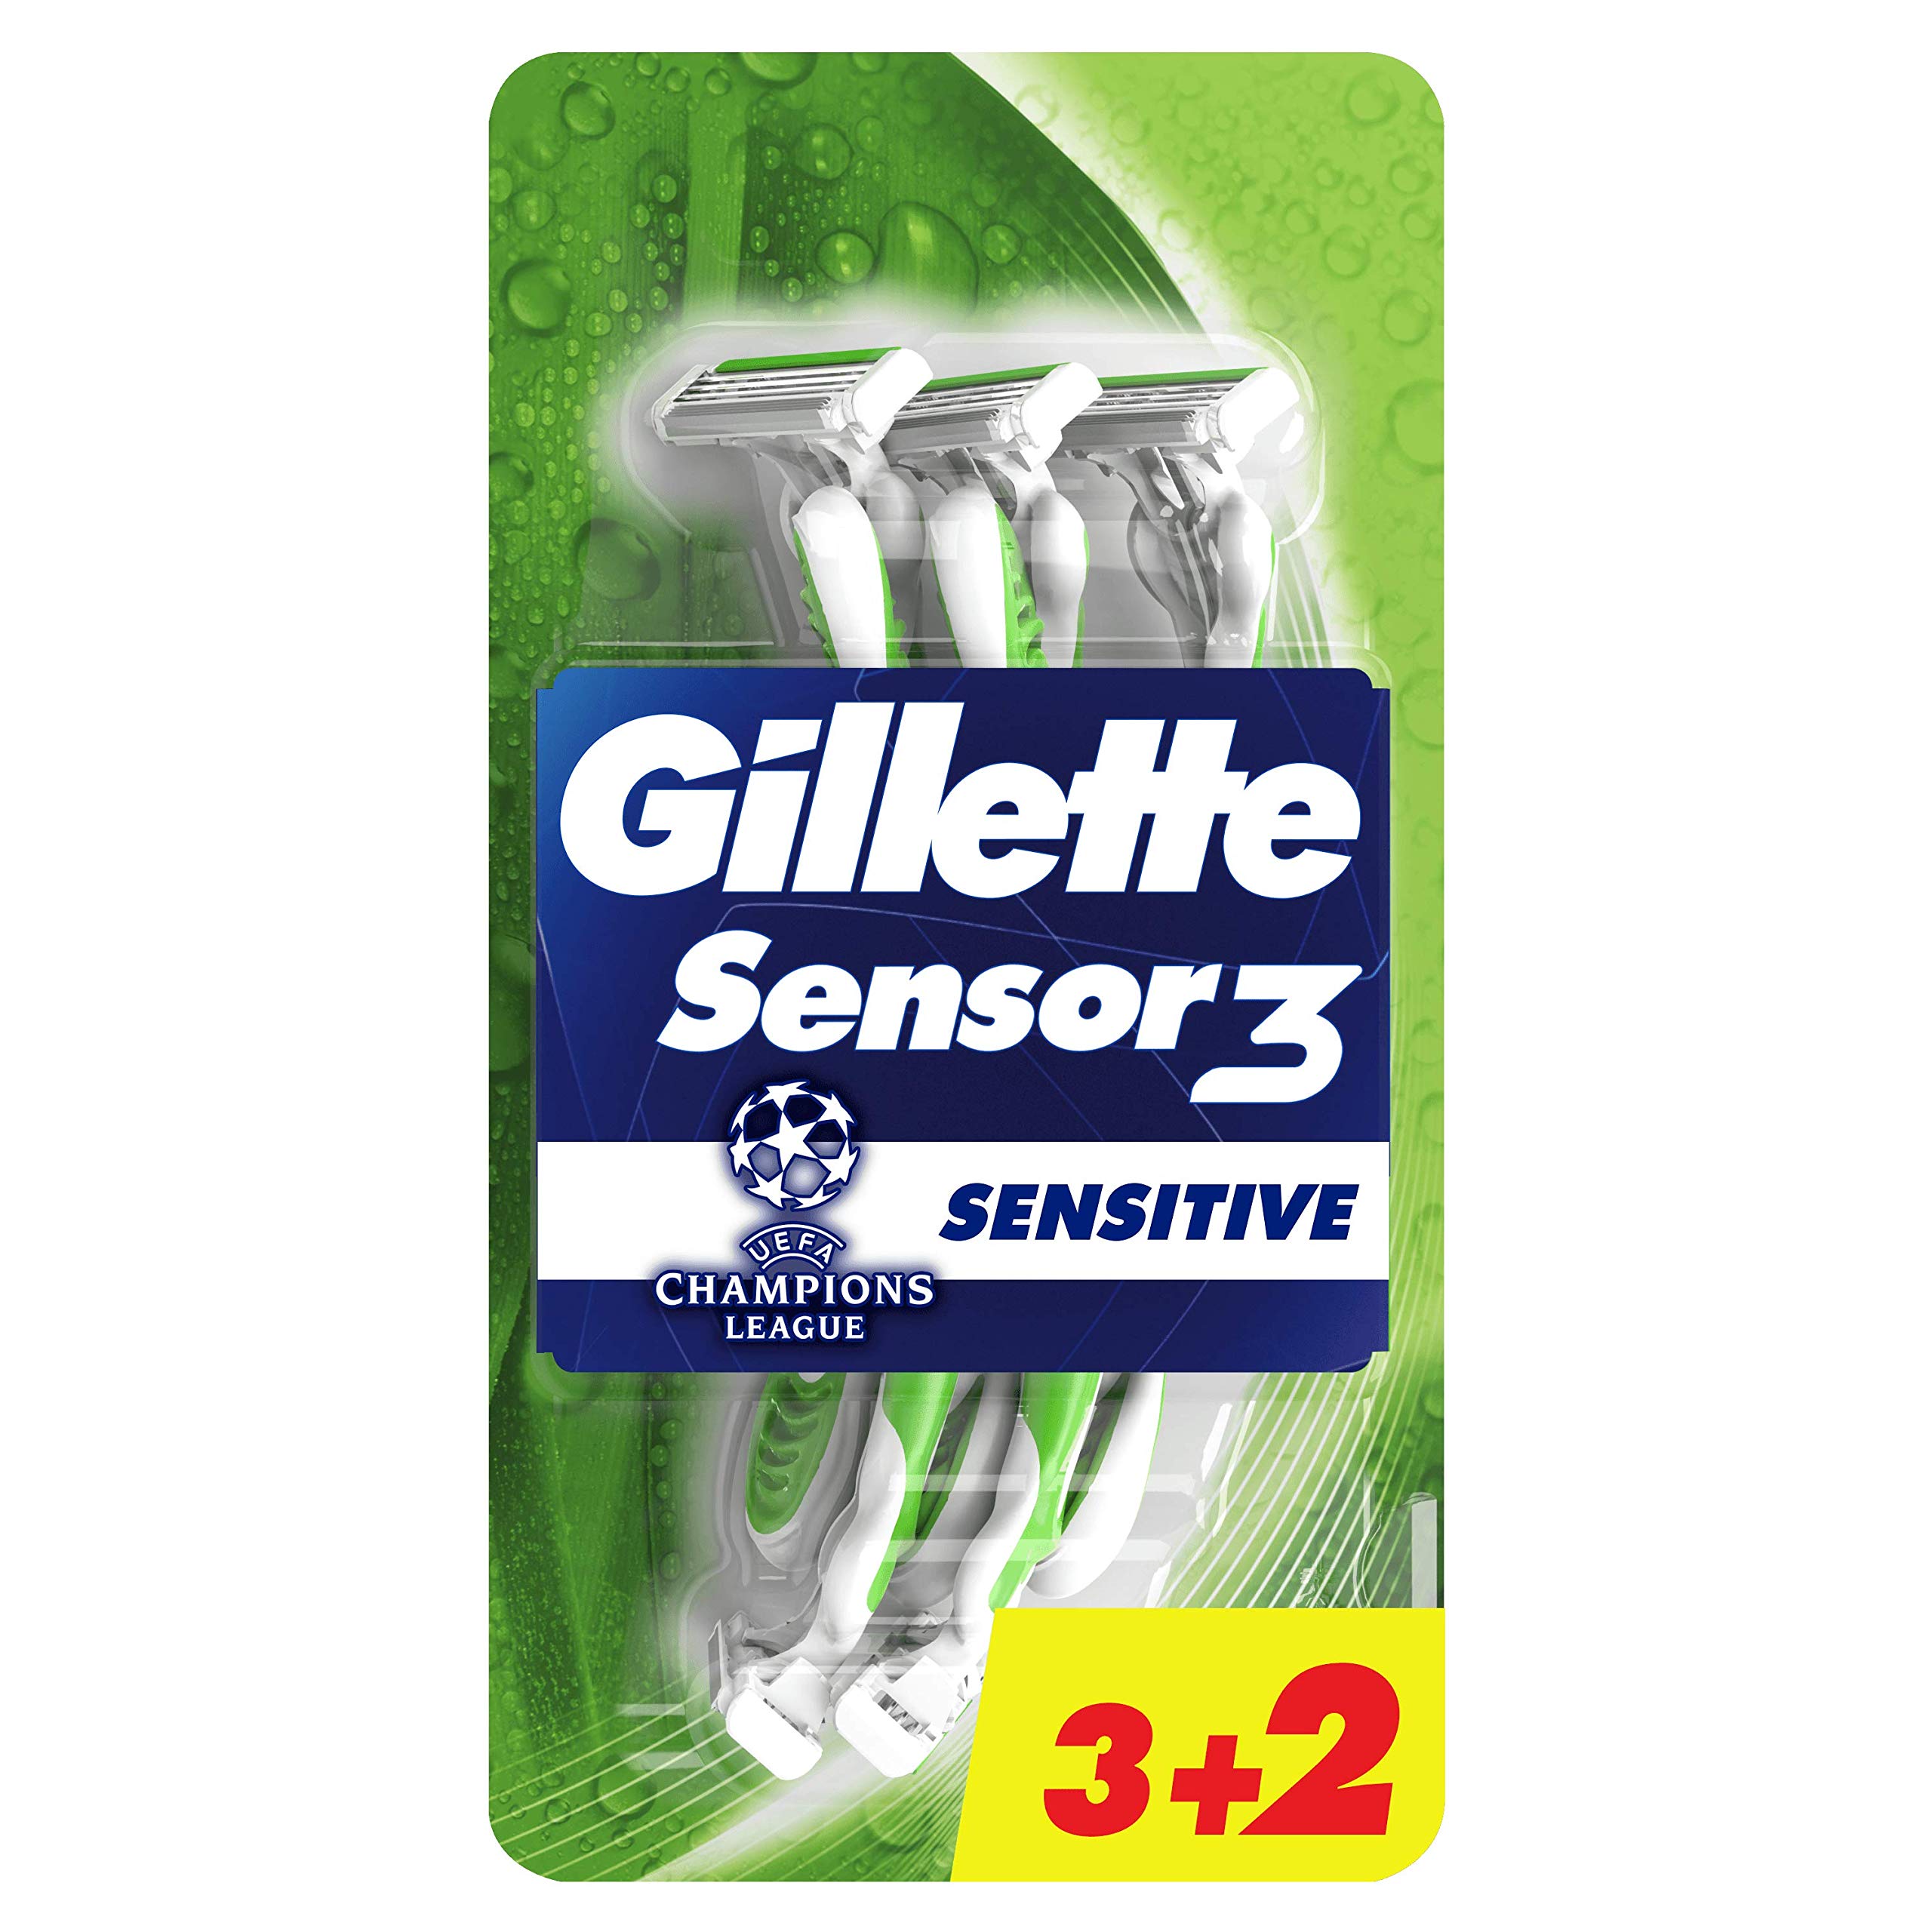 Gillette Sensor 3 Sensitive - confezione usagetta 3 + 2 pezzi